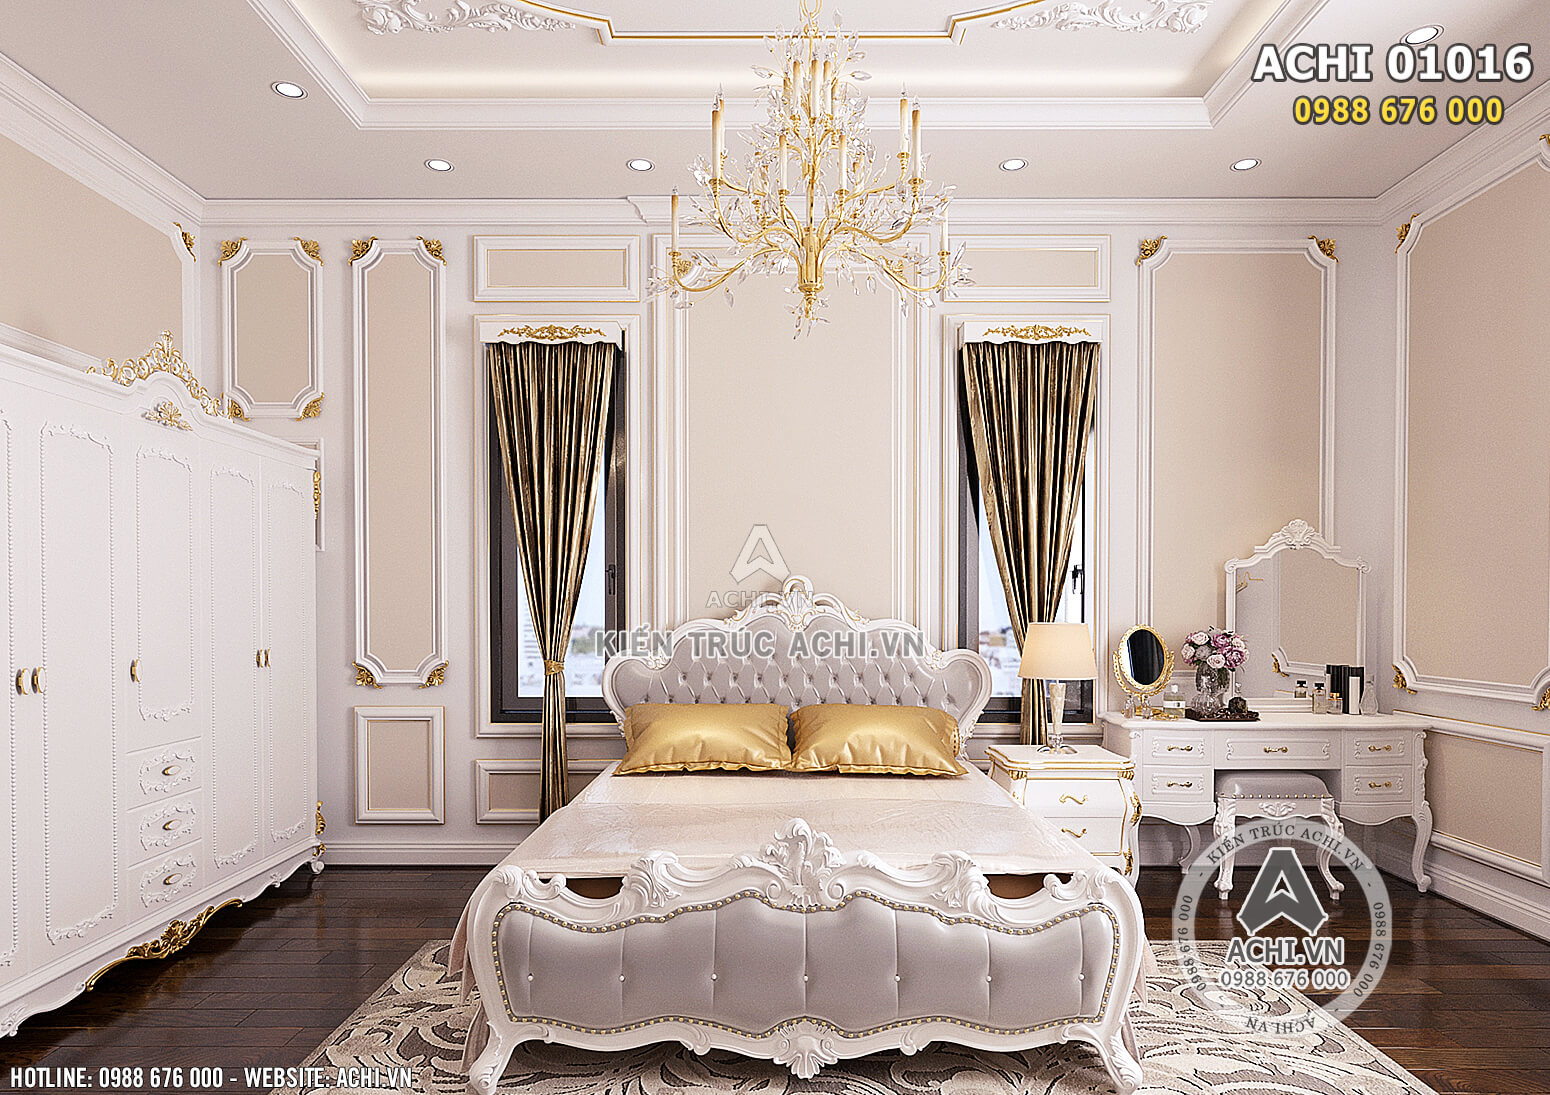 Hình ảnh: Thiết kế nội thất tân cổ điển cho không gian phòng ngủ Master - ACHI 01016